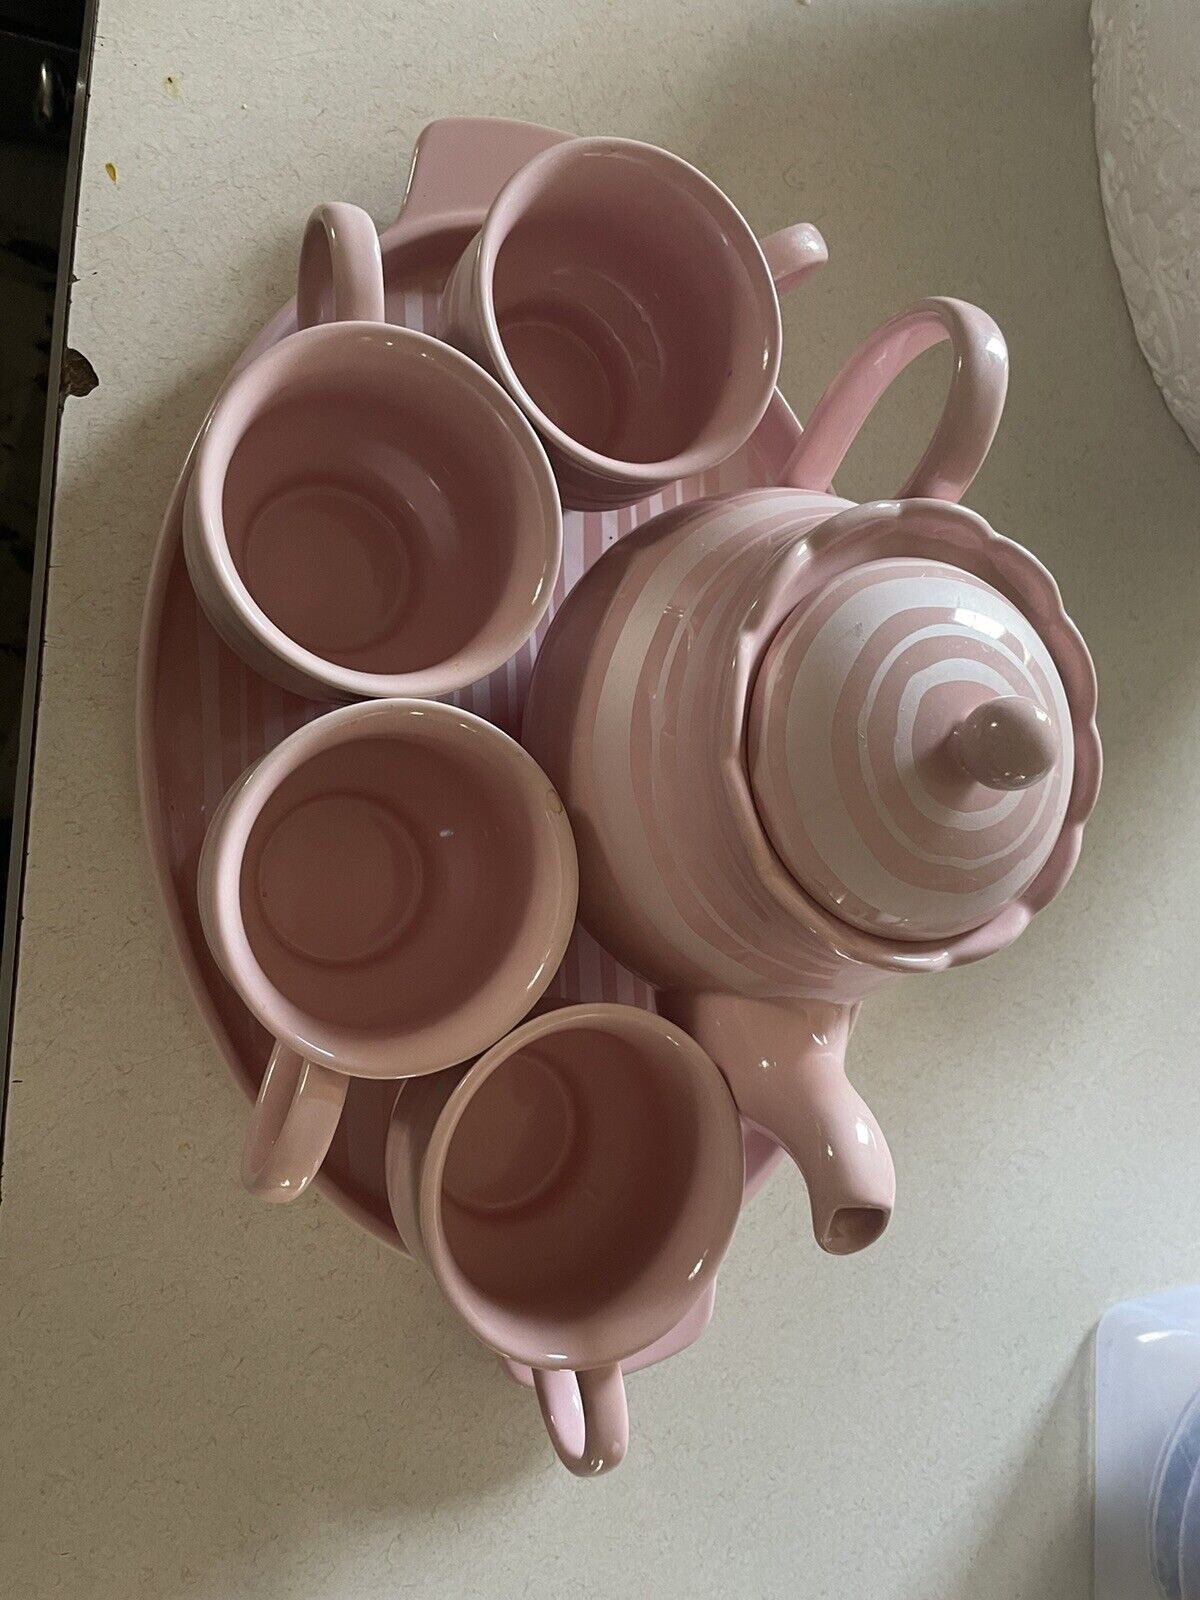 Temp-Tations 6-piece Pink Tea set, tray, 4 cups and teapot.